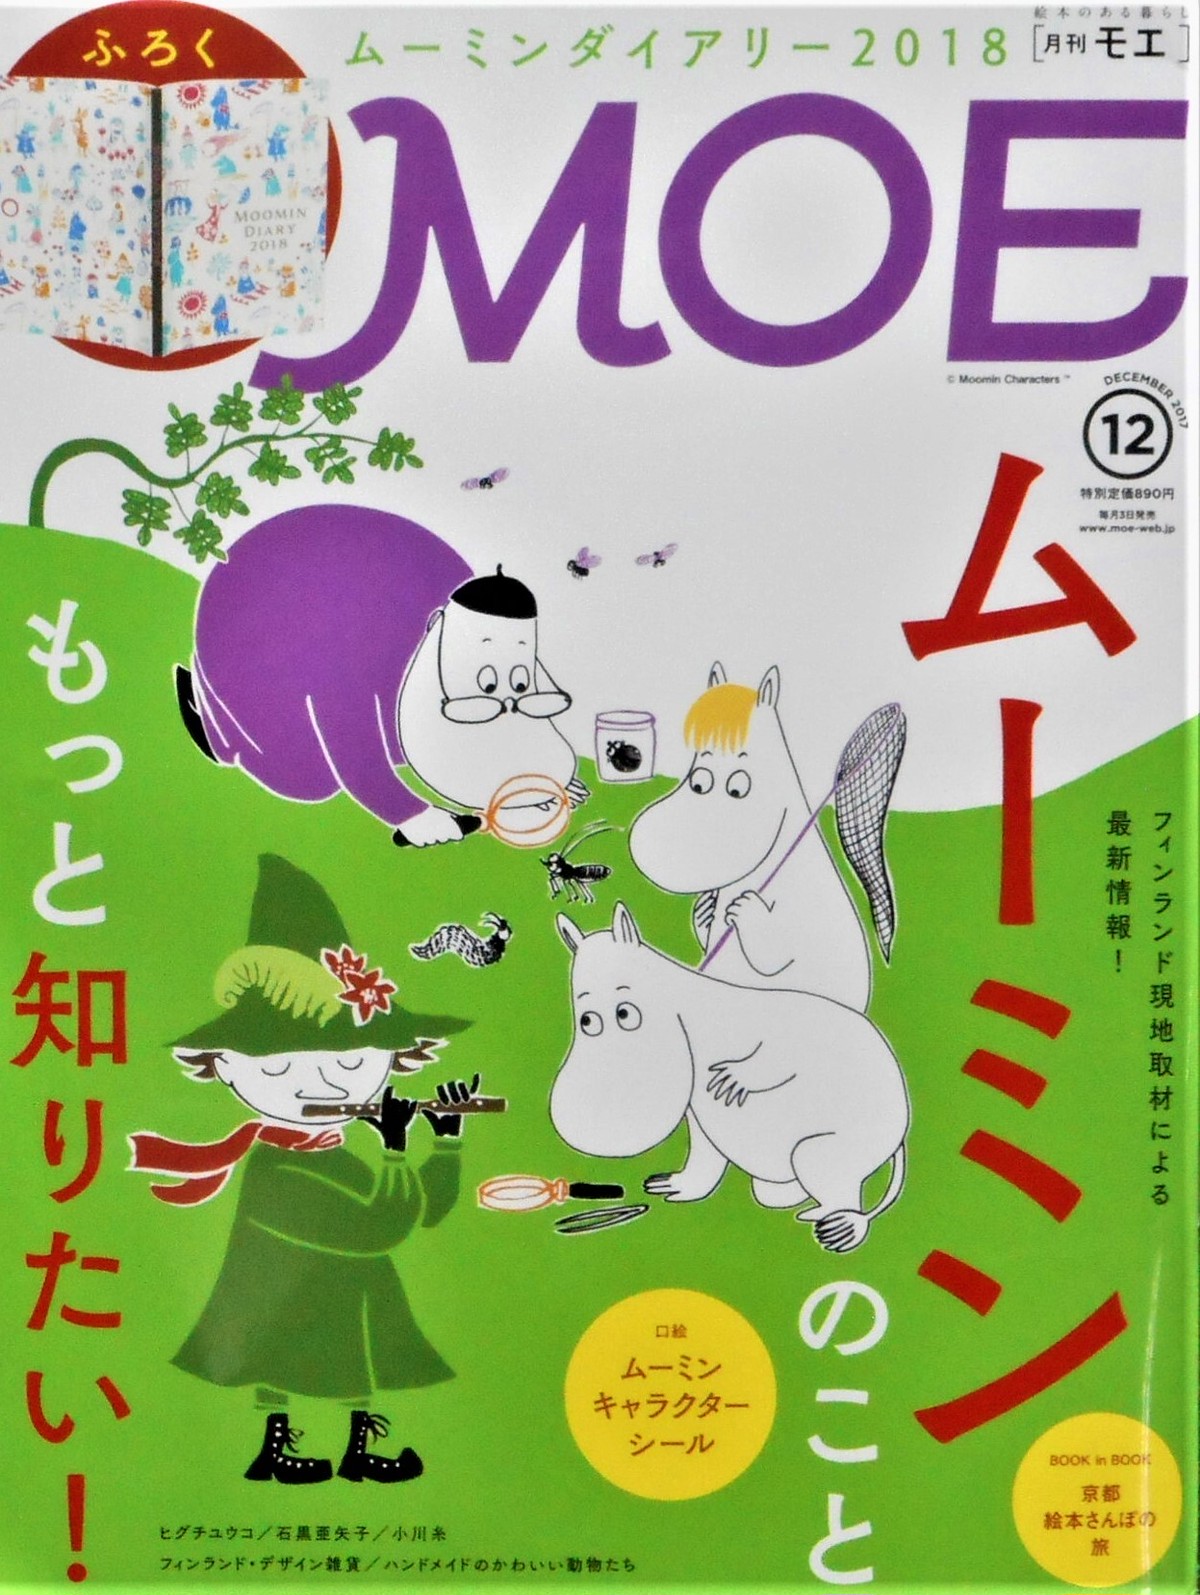 月刊 Moe ２０１７年 １２月号 特集 もっと知りたい ムーミン Art Books Gallery 910 品切れ絵本 絶版絵本 古書絵本専門店